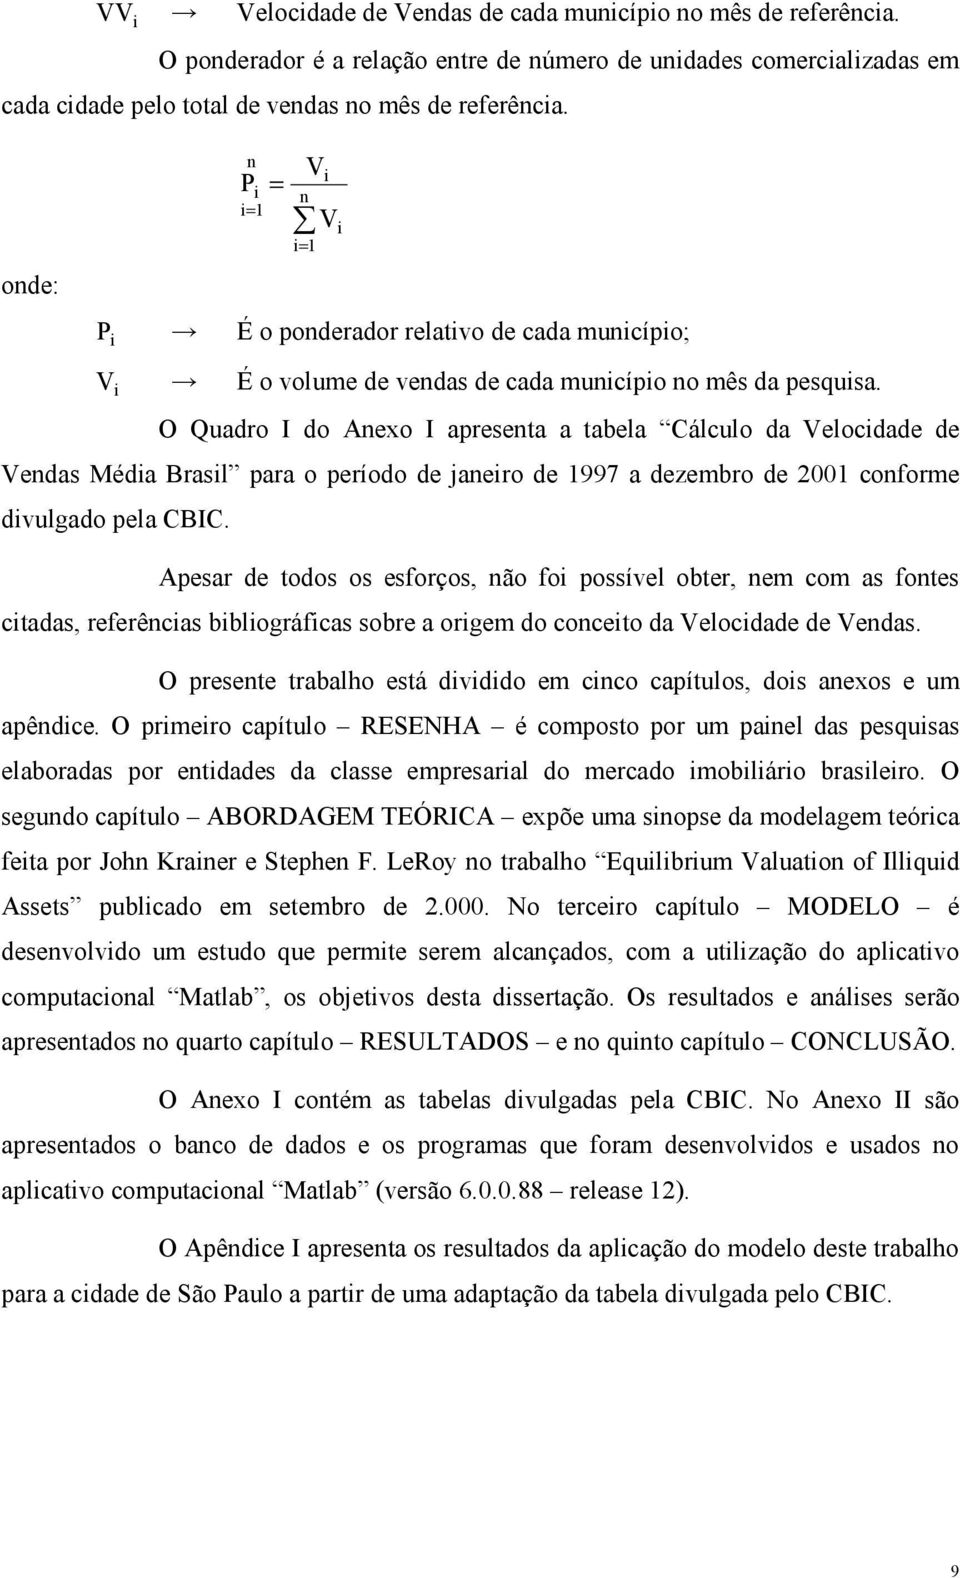 O Quadro I do Anexo I apresena a abela Cálculo da Velocidade de Vendas Média Brasil para o período de janeiro de 997 a dezembro de 200 conforme divulgado pela CBIC.